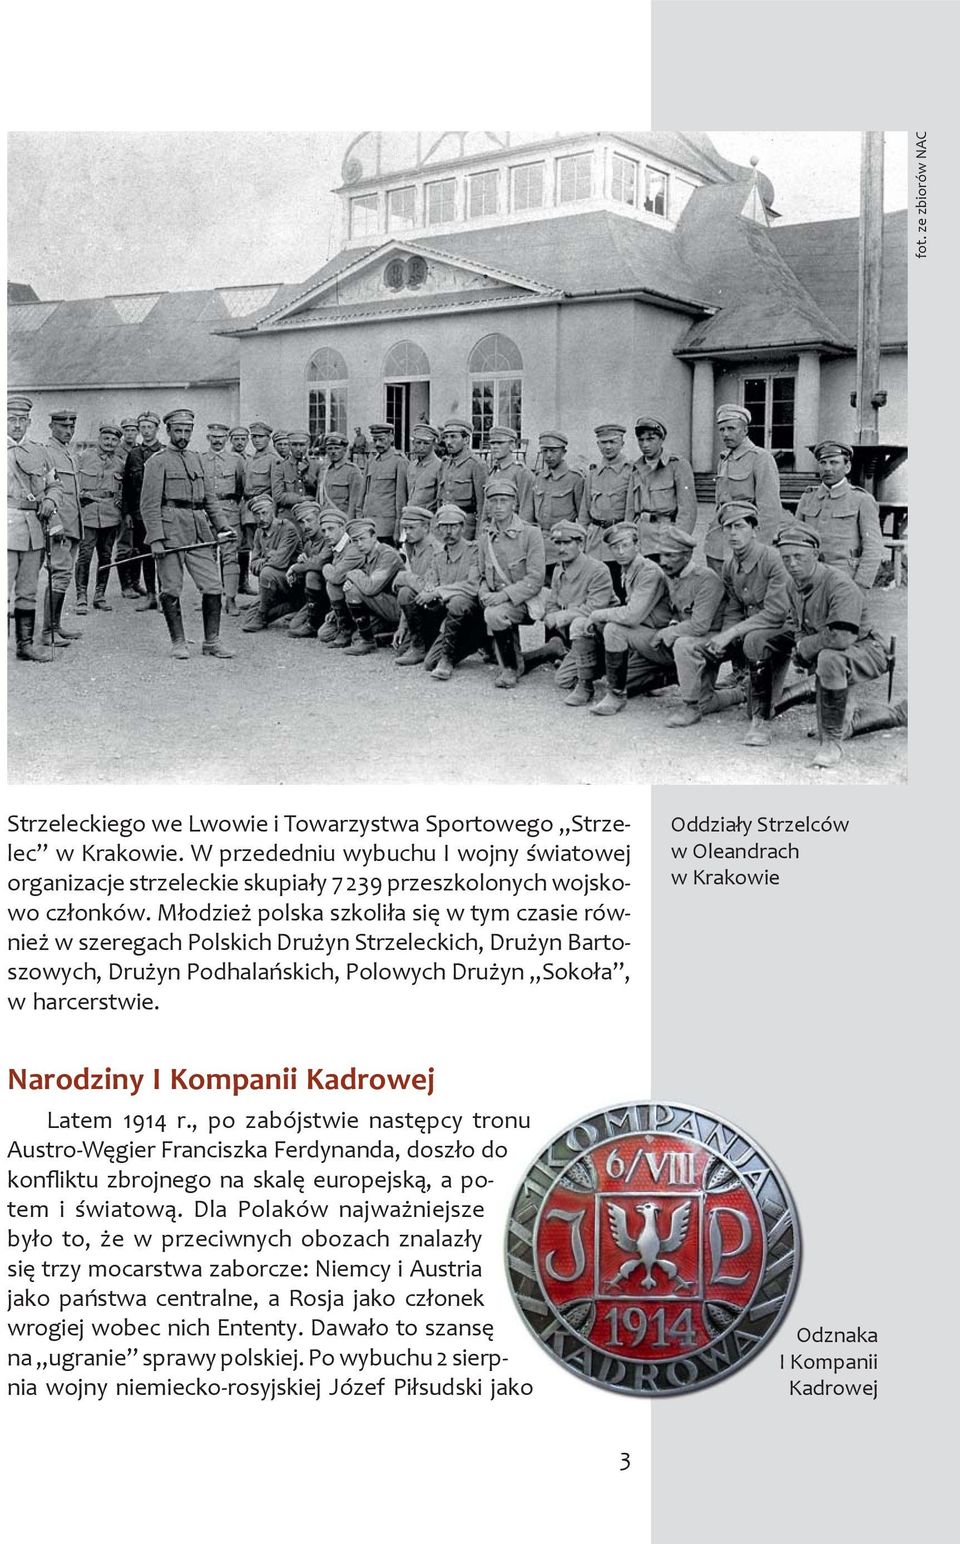 Młodzież polska szkoliła się w tym czasie również w szeregach Polskich Drużyn Strzeleckich, Drużyn Bartoszowych, Drużyn Podhalańskich, Polowych Drużyn Sokoła, w harcerstwie.